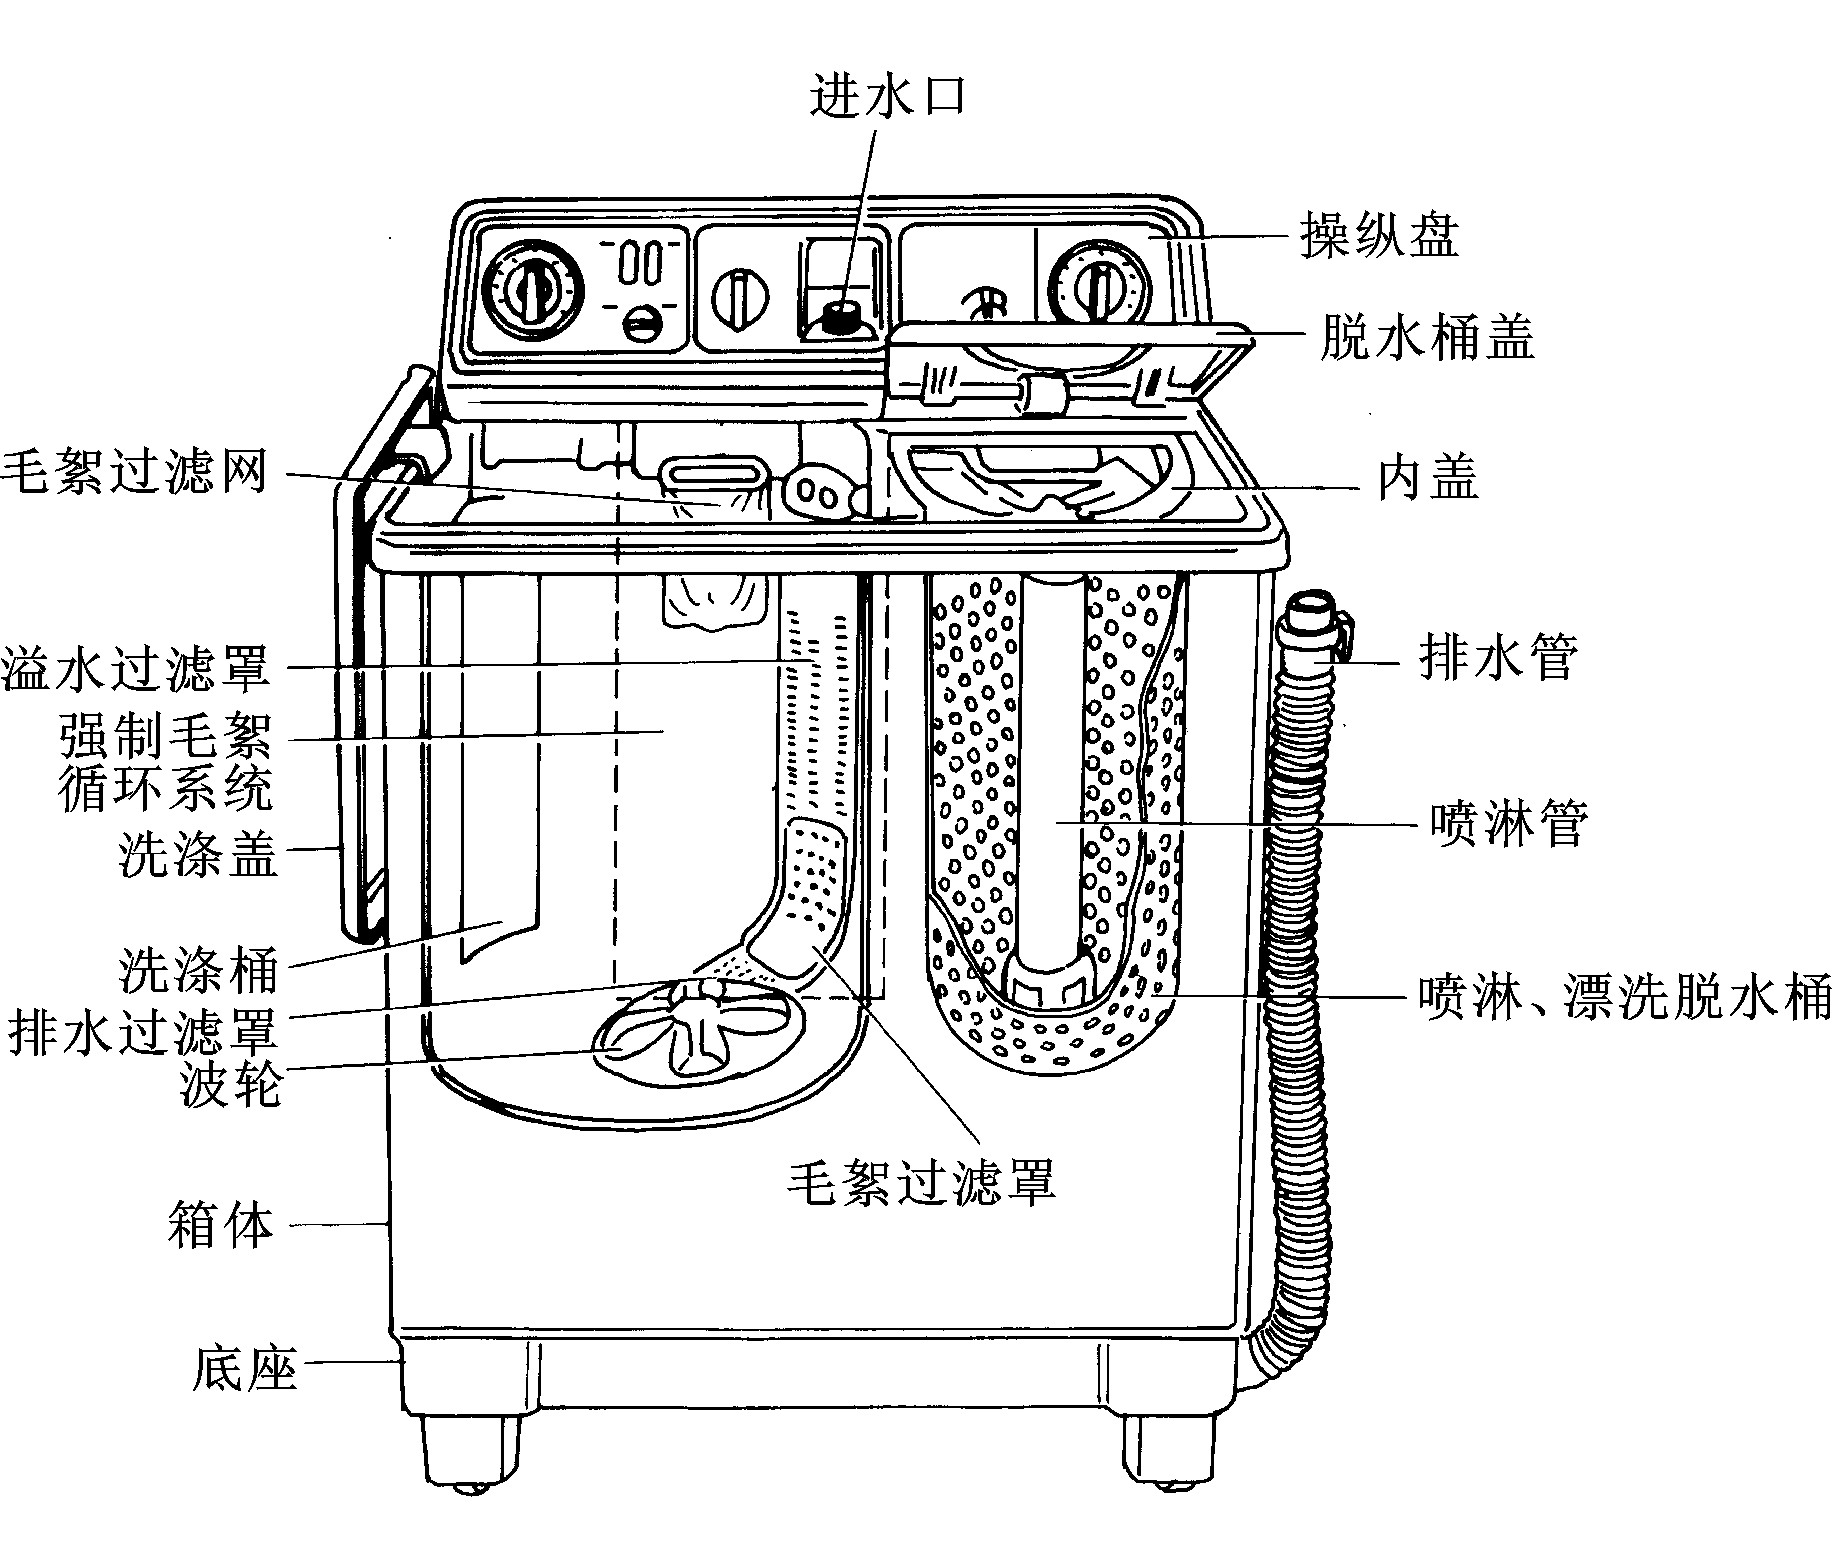 一、 普通型双桶洗衣机的结构原理